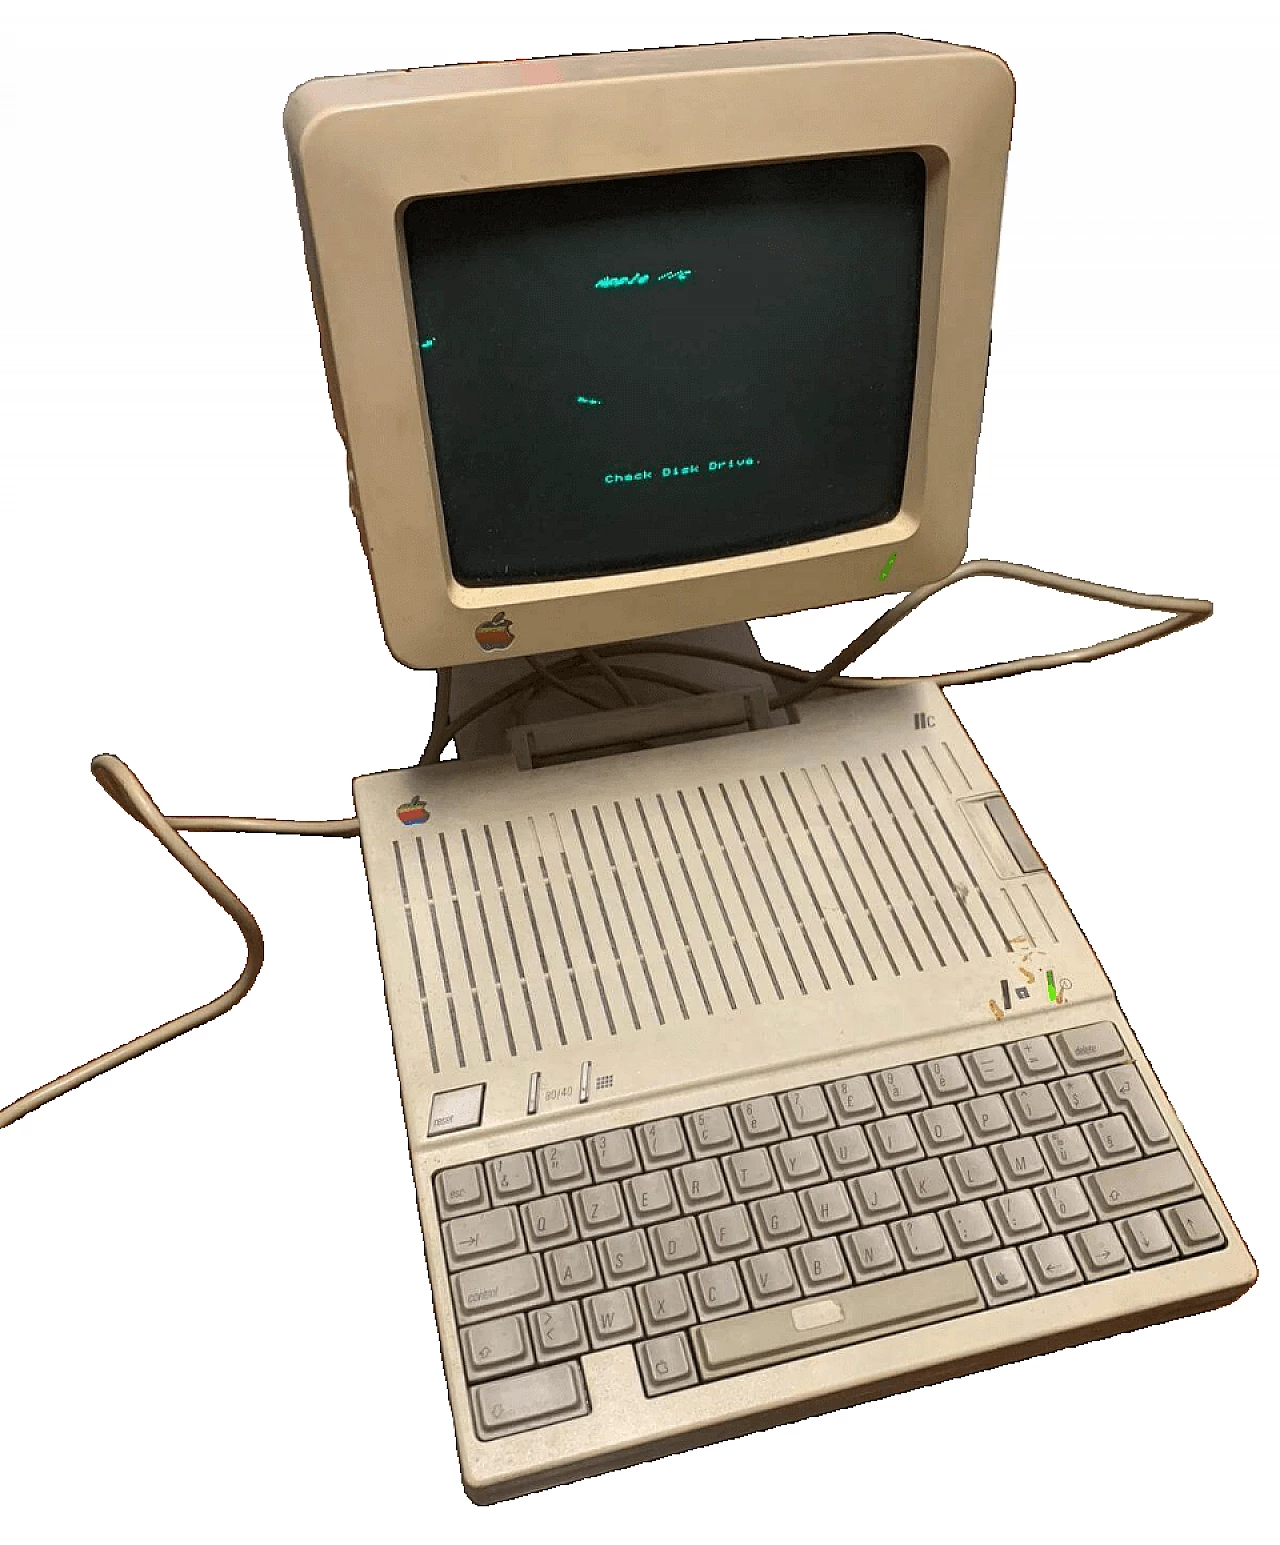 Apple II computer, 1984 17